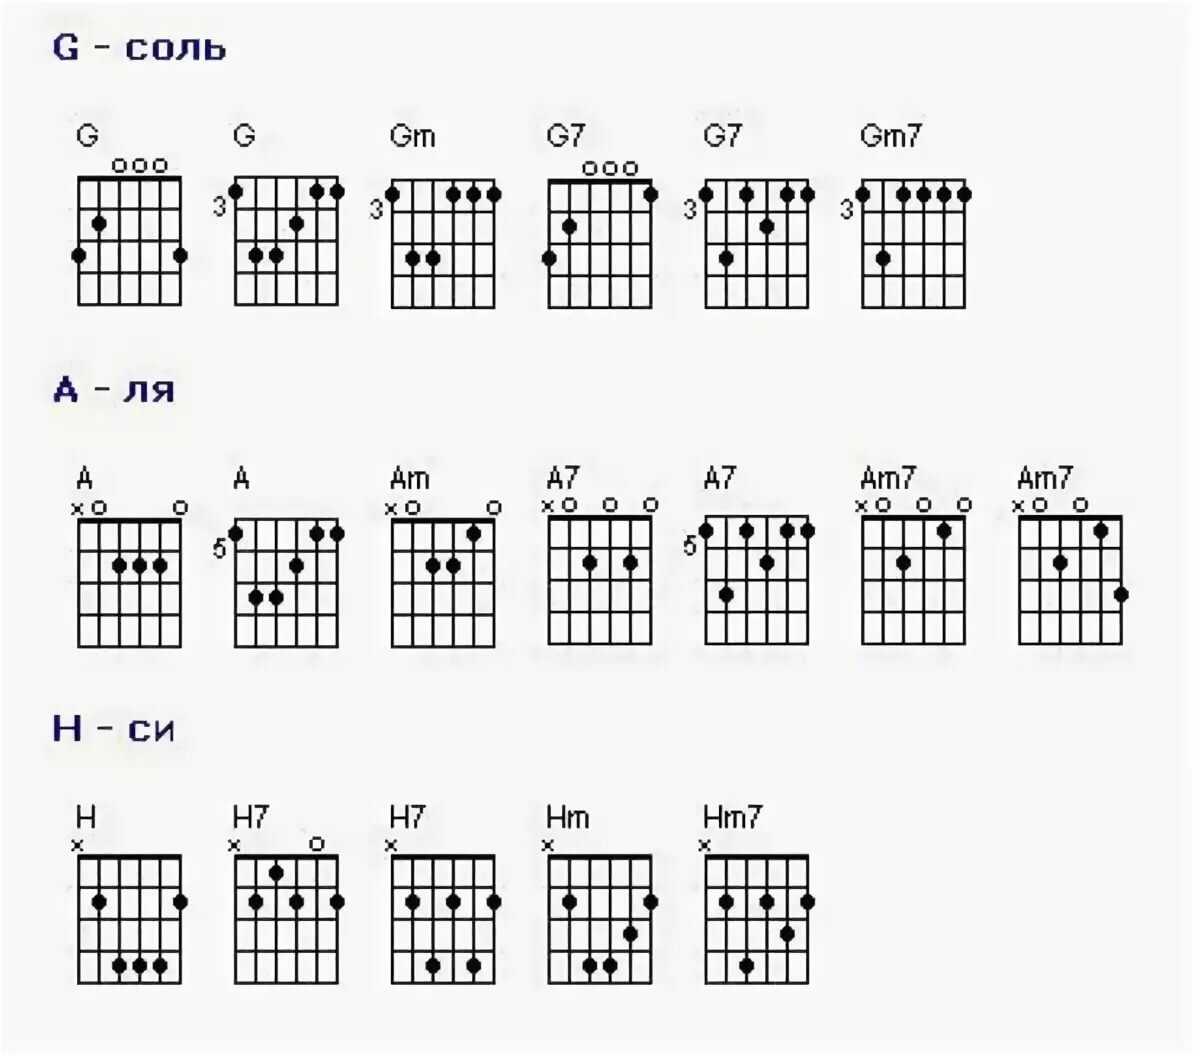 Аккорды для гитары для начинающих 6 струн